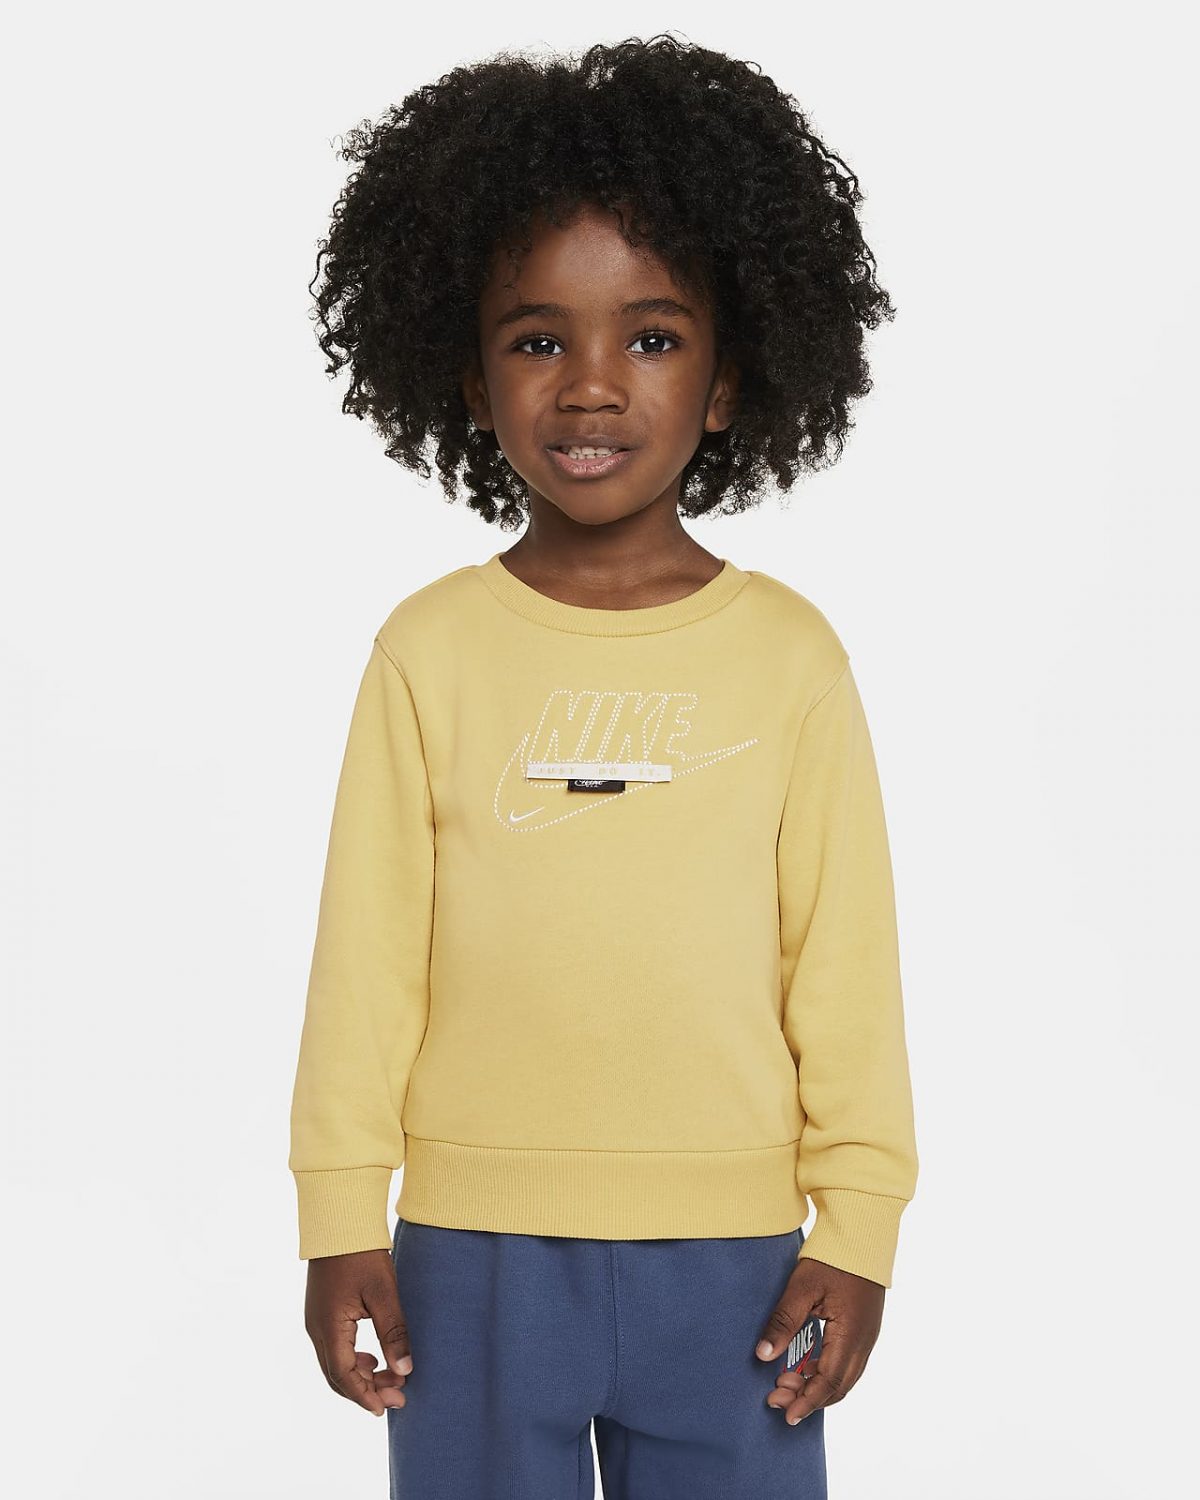 Детский топ Nike Sportswear Club фото